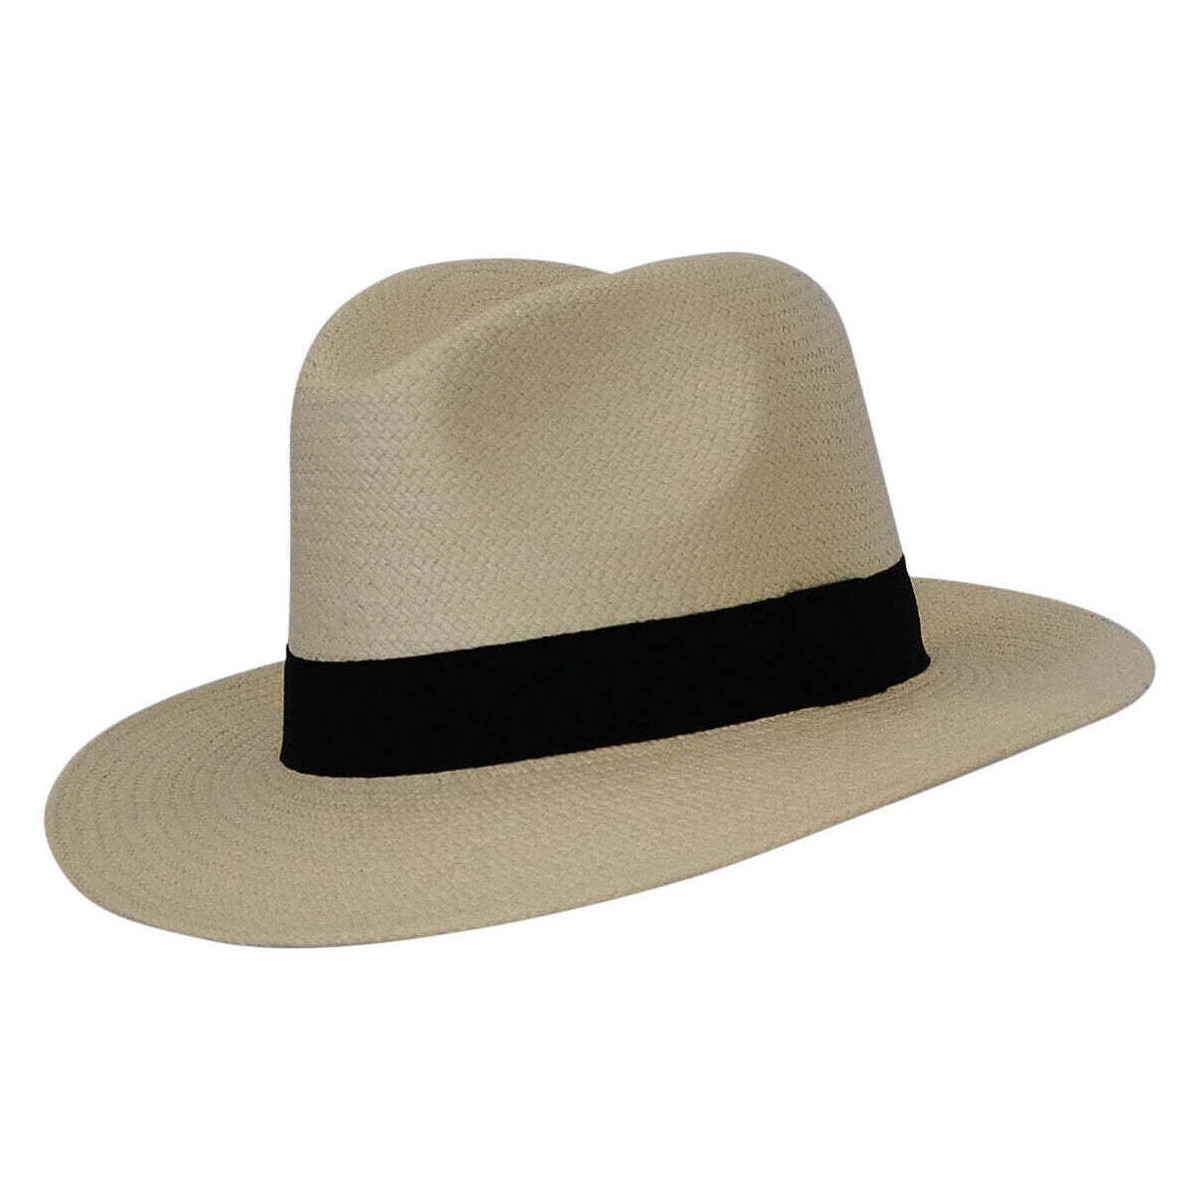 Accessoires textile Chapeaux Chapeau-Tendance Véritable chapeau panama HIGH T61 Blanc